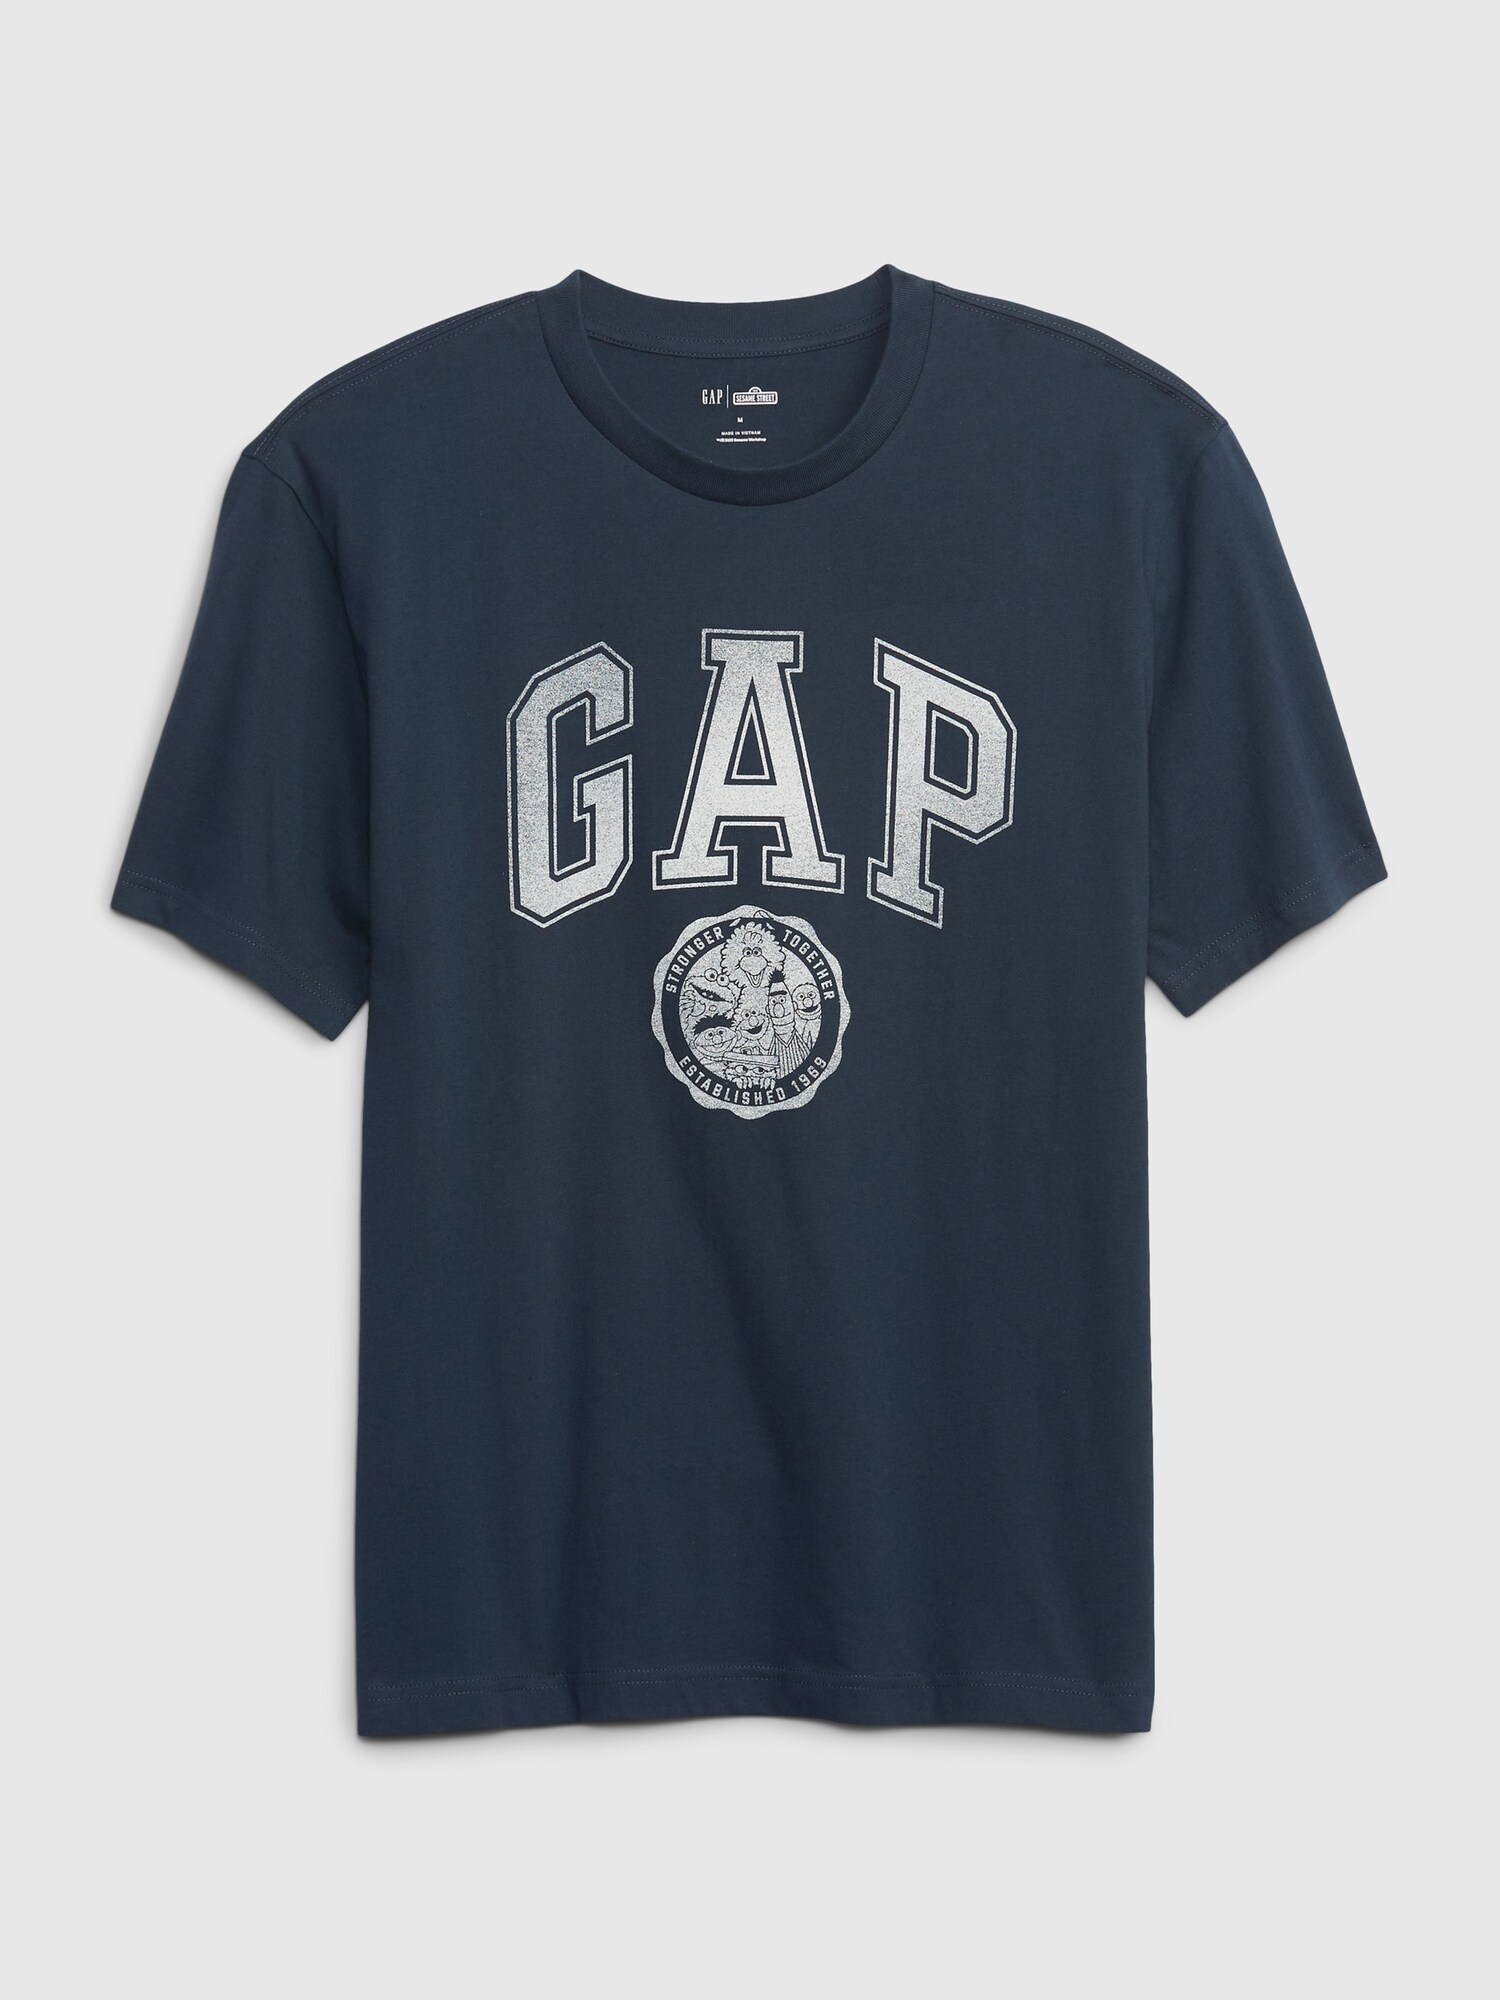 オーガニックコットン100% Gap &#215 セサミストリート グラフィックtシャツ